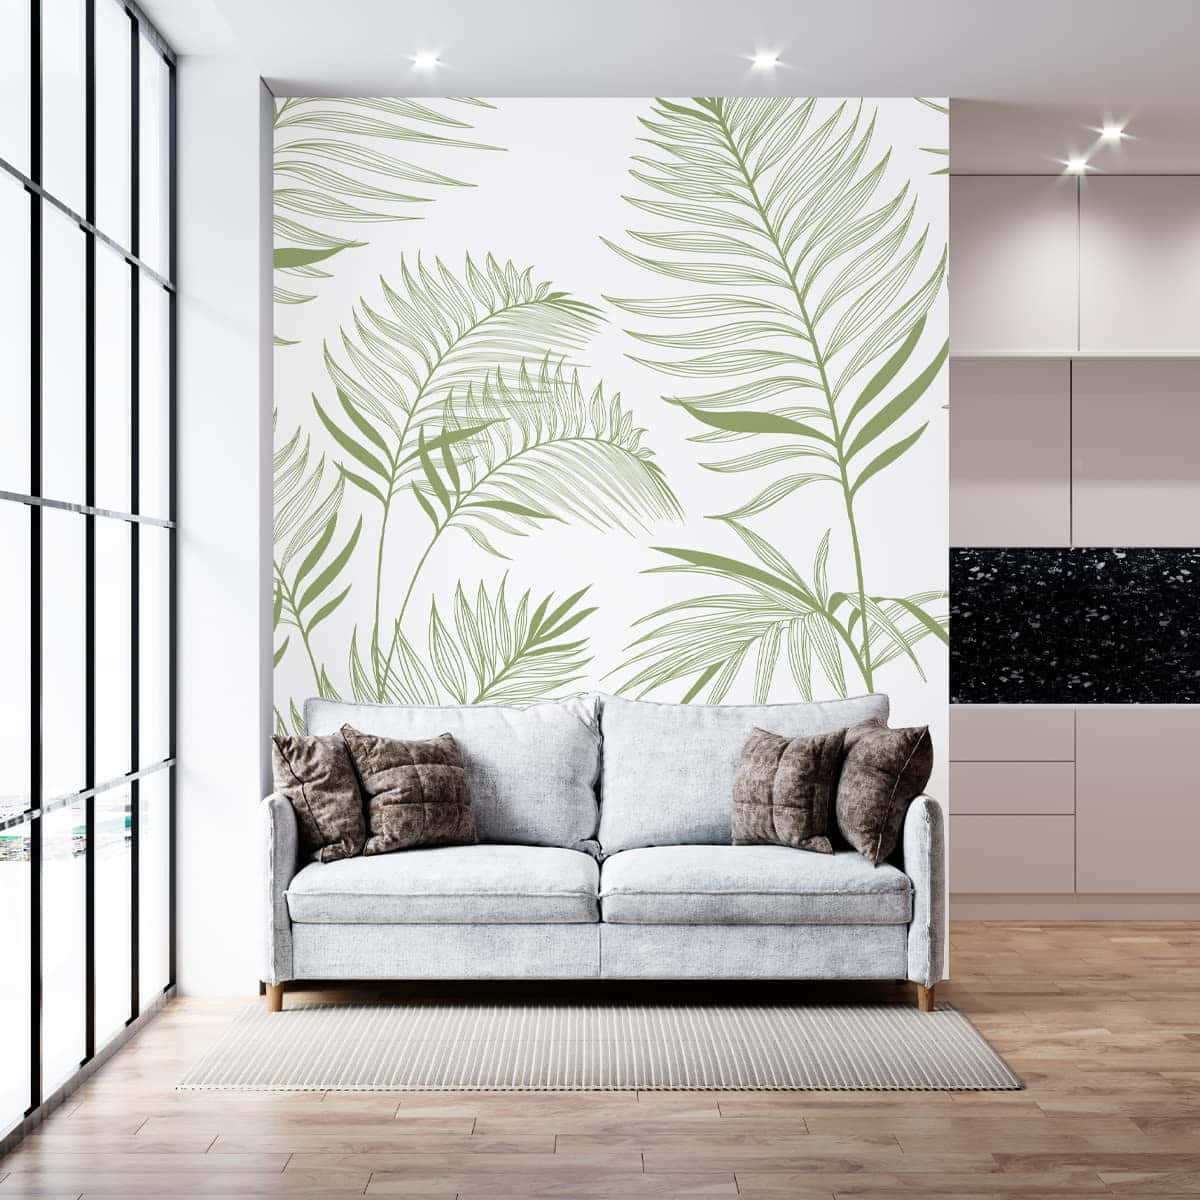 Living Area With A Subtle Leaf Design Wallpaper